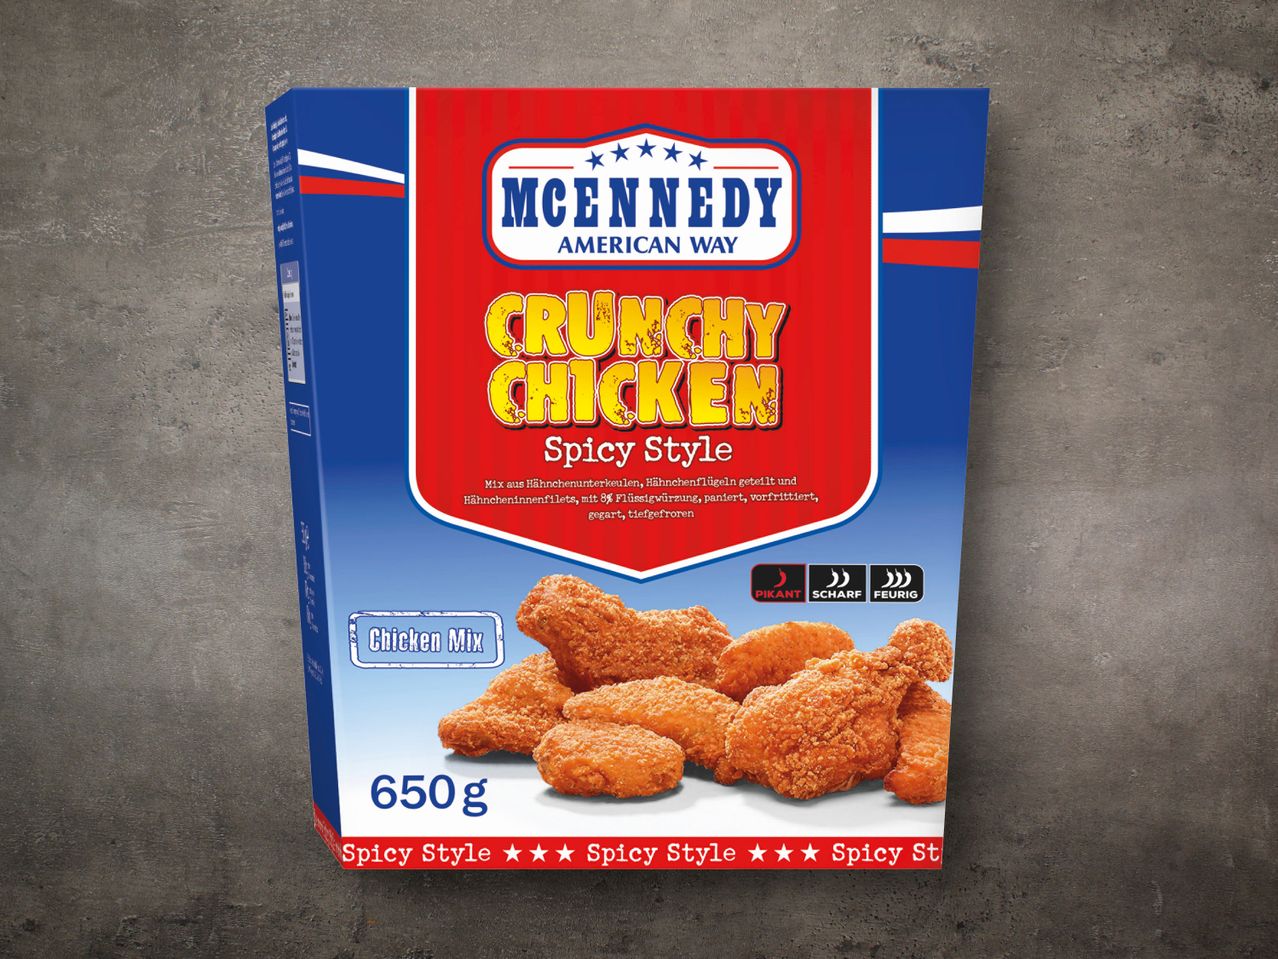 McEnnedy Crunchy Bucket Chicken